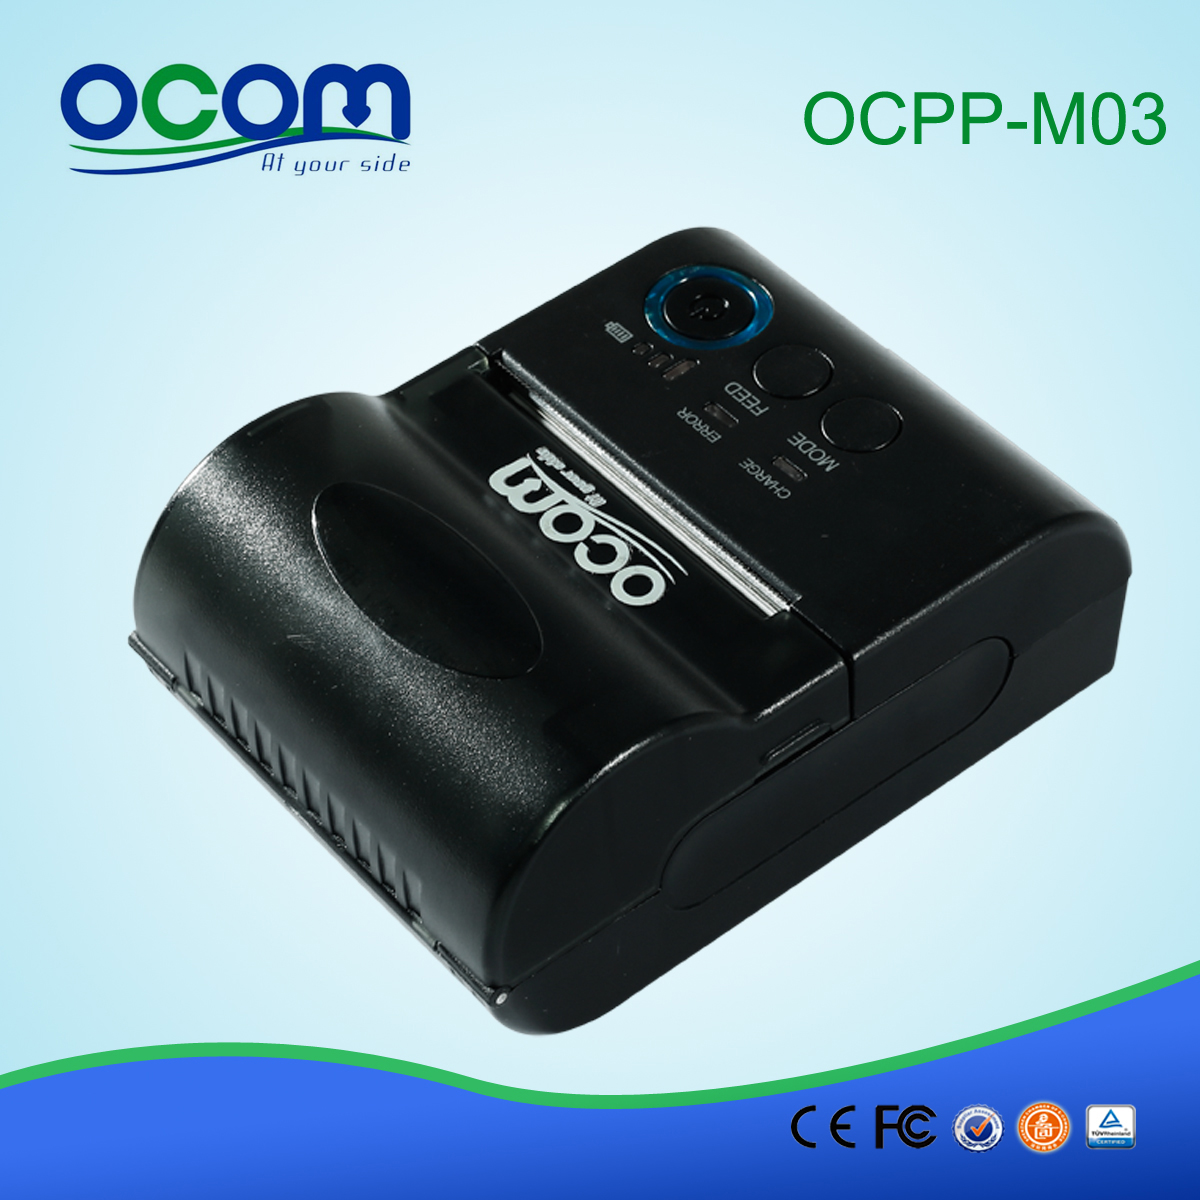 兼容Android和IOS系统58毫米小型手持式蓝牙移动POS热敏打印机(OCPP-M03)